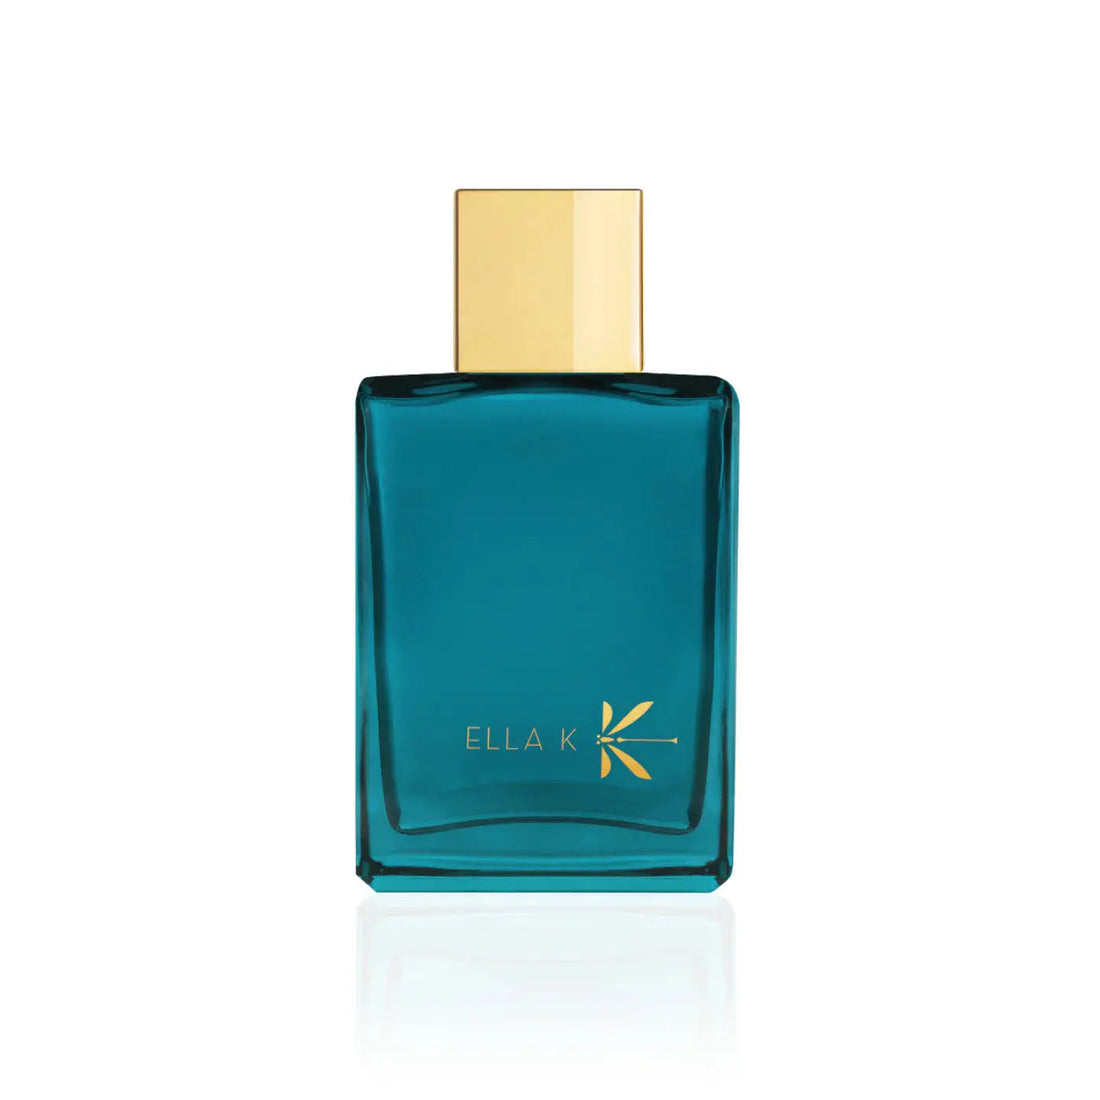 Ella k parfums Orchidée K - 100 ml eau de parfum